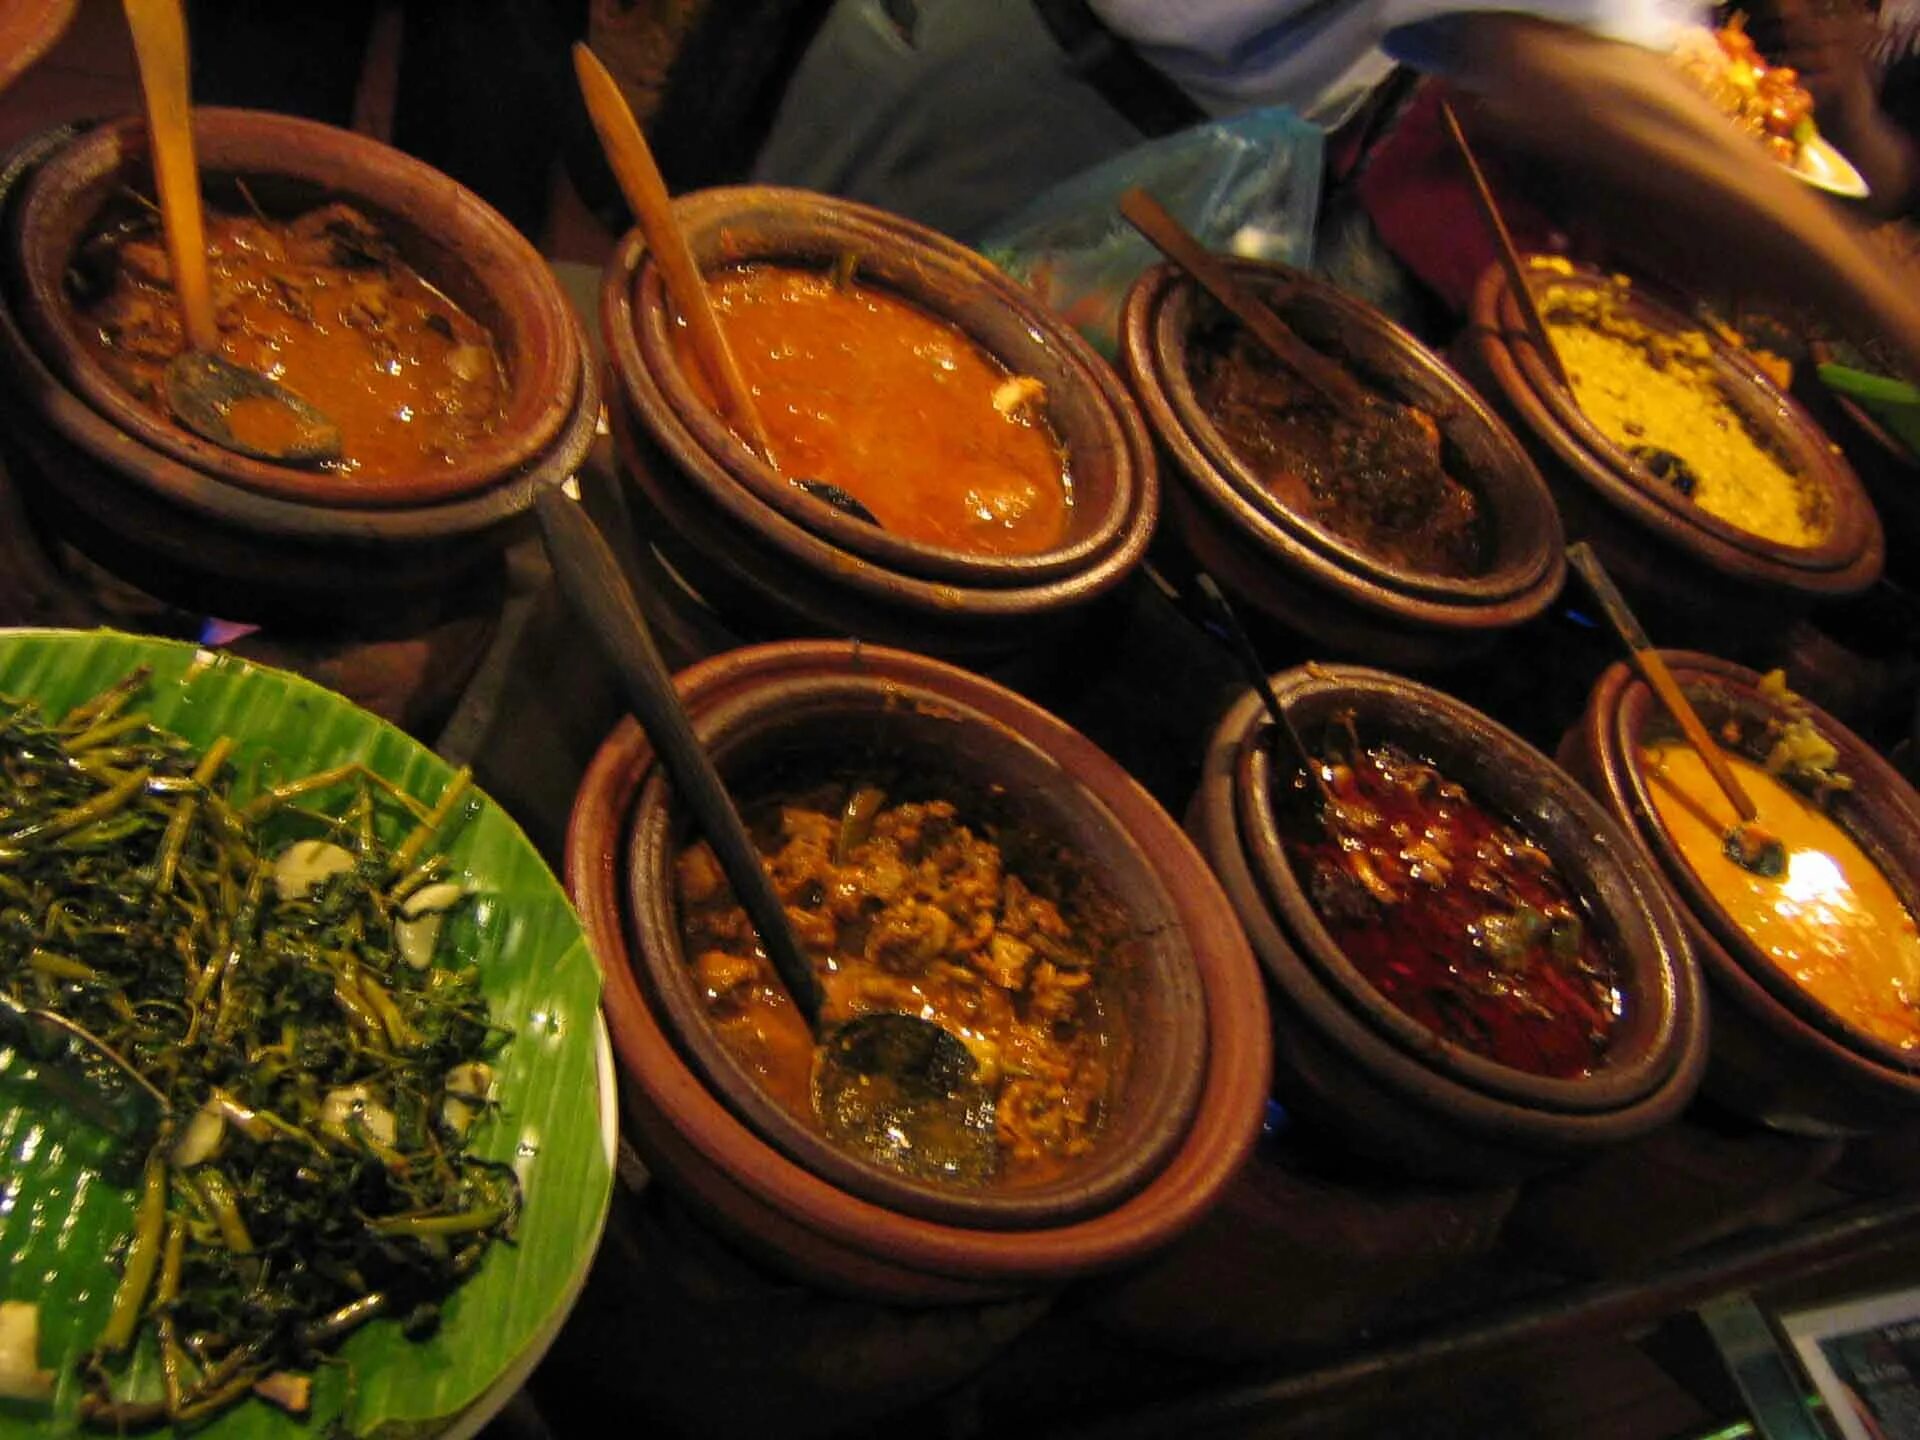 Шри Ланка нац кухня. Рис и карри Шри Ланка. Национальные блюда Шри Ланки. Карри блюдо Шри Ланка. Питание на шри ланке